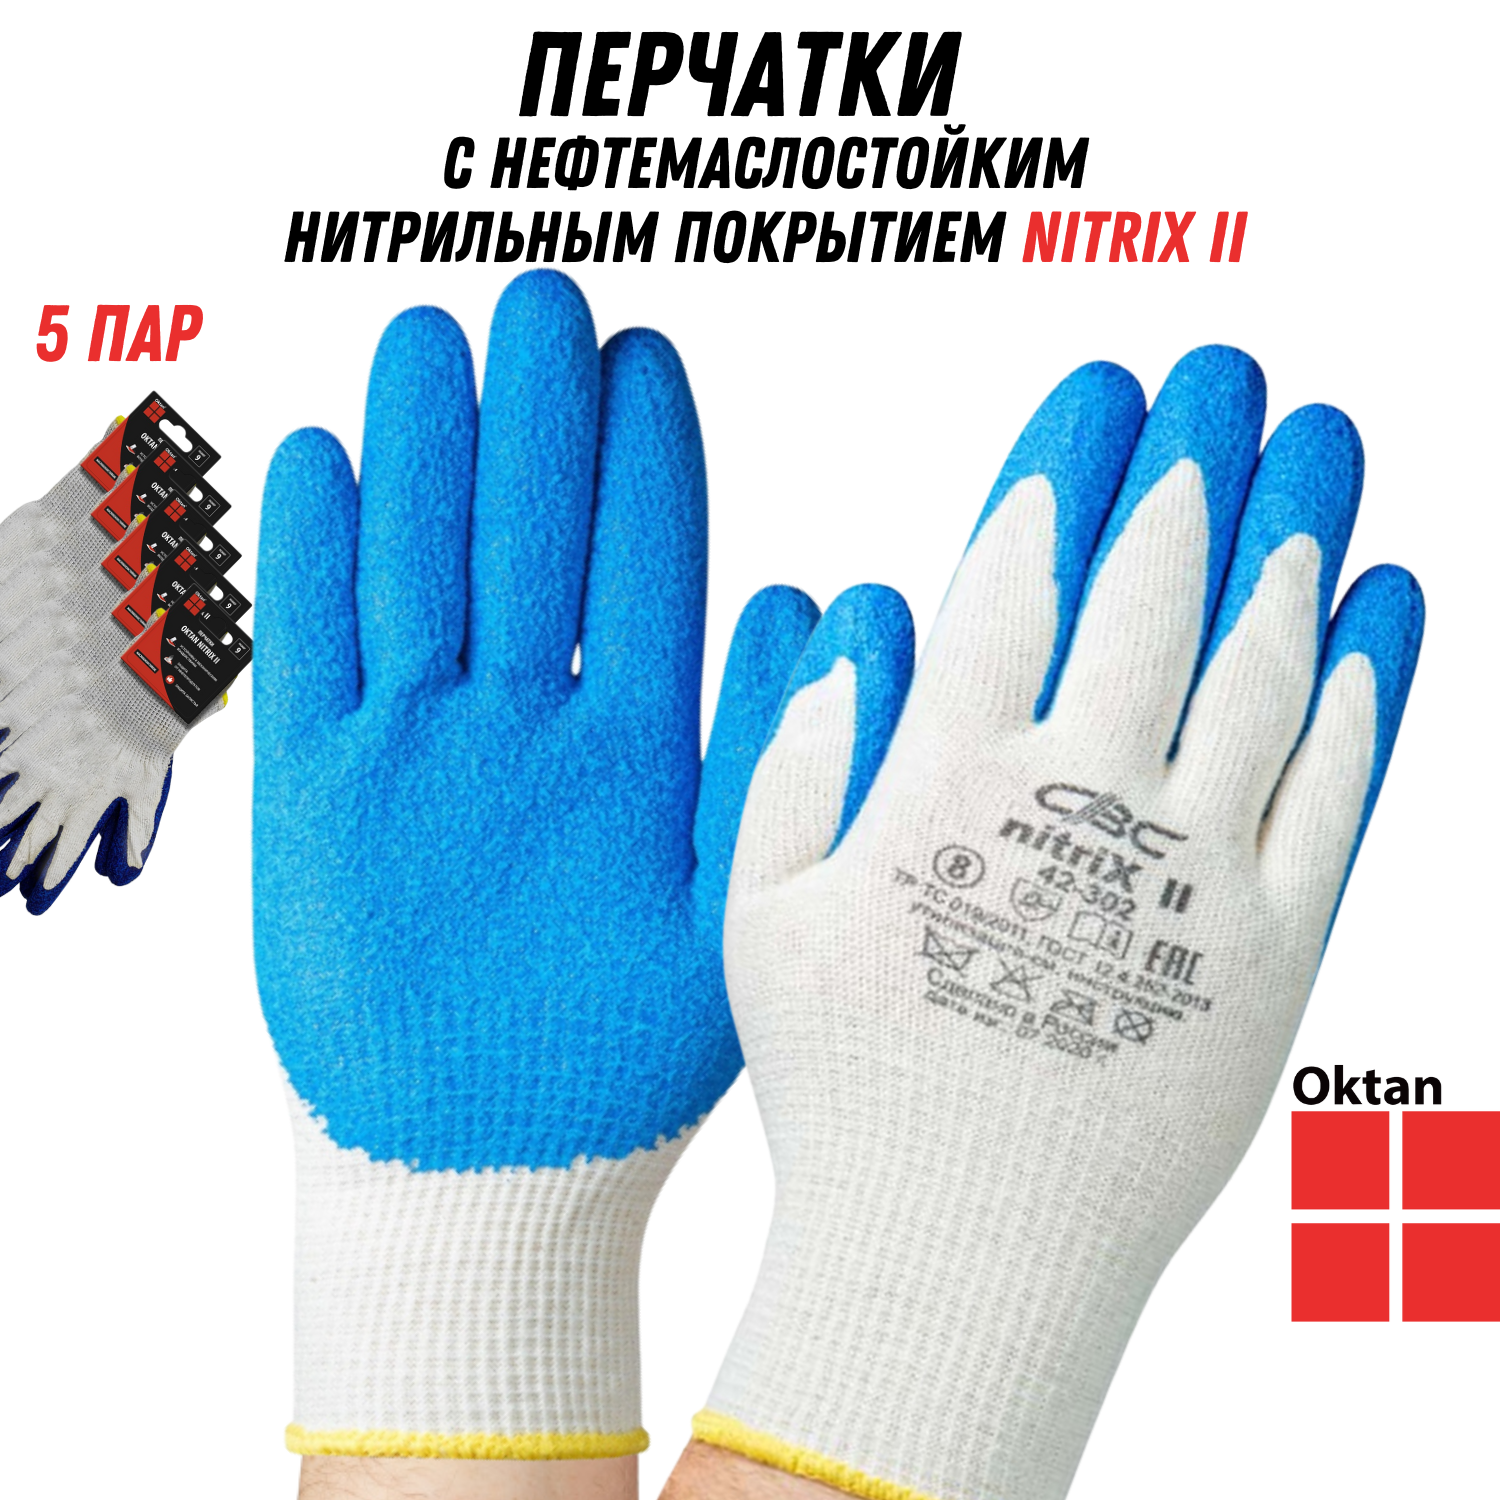 Перчатки рабочие Oktan NITRIX II А5-01-21-05-ММ белые с синим размер 9, 5 пар зимние утепленные рабочие перчатки для сборочных работ tegera